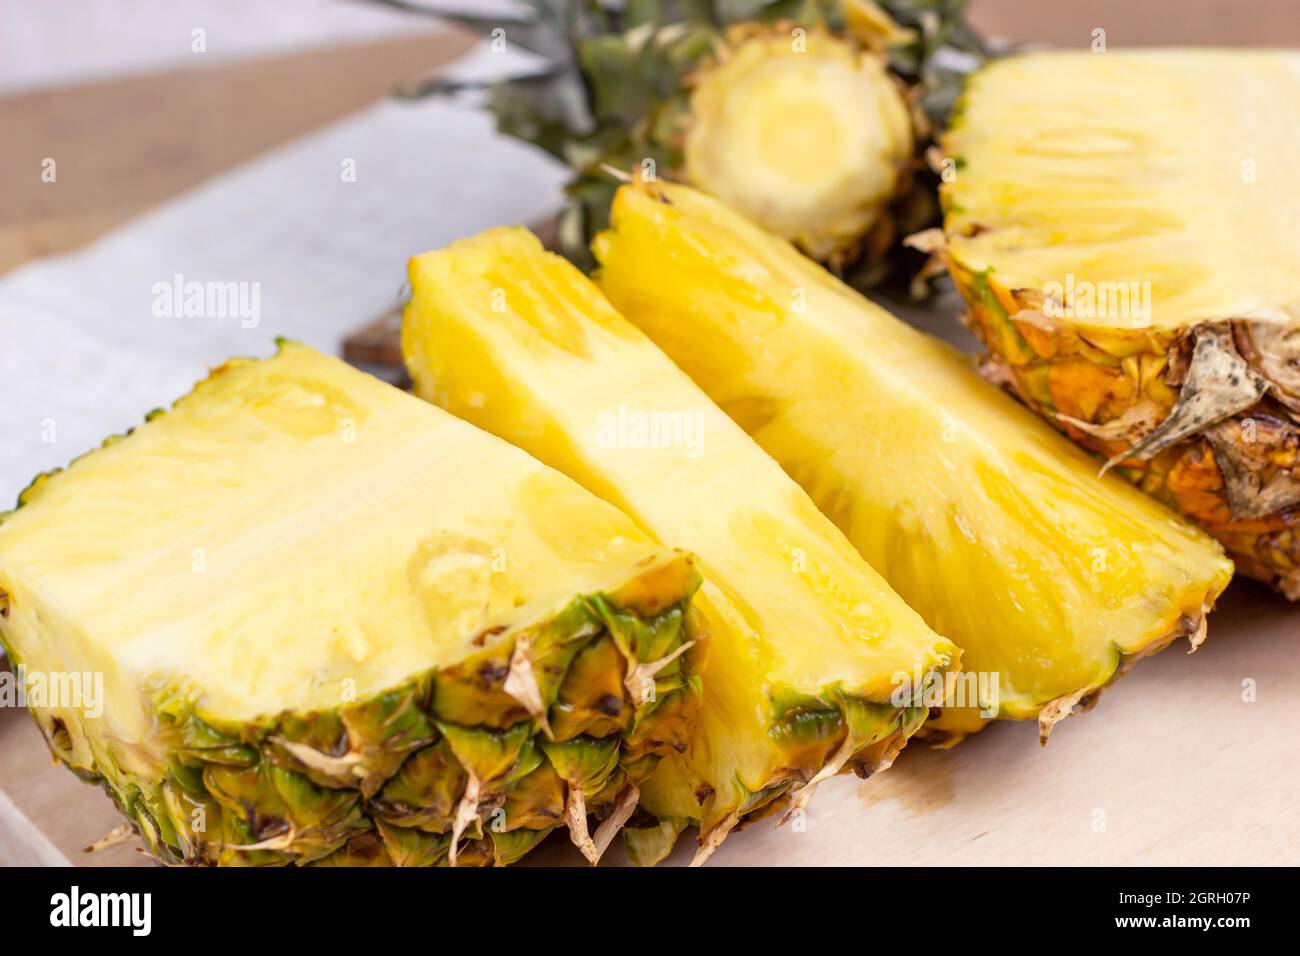 Tranches de fruits à l'ananas jaune juteux frais sur fond de bois clair. Banque D'Images